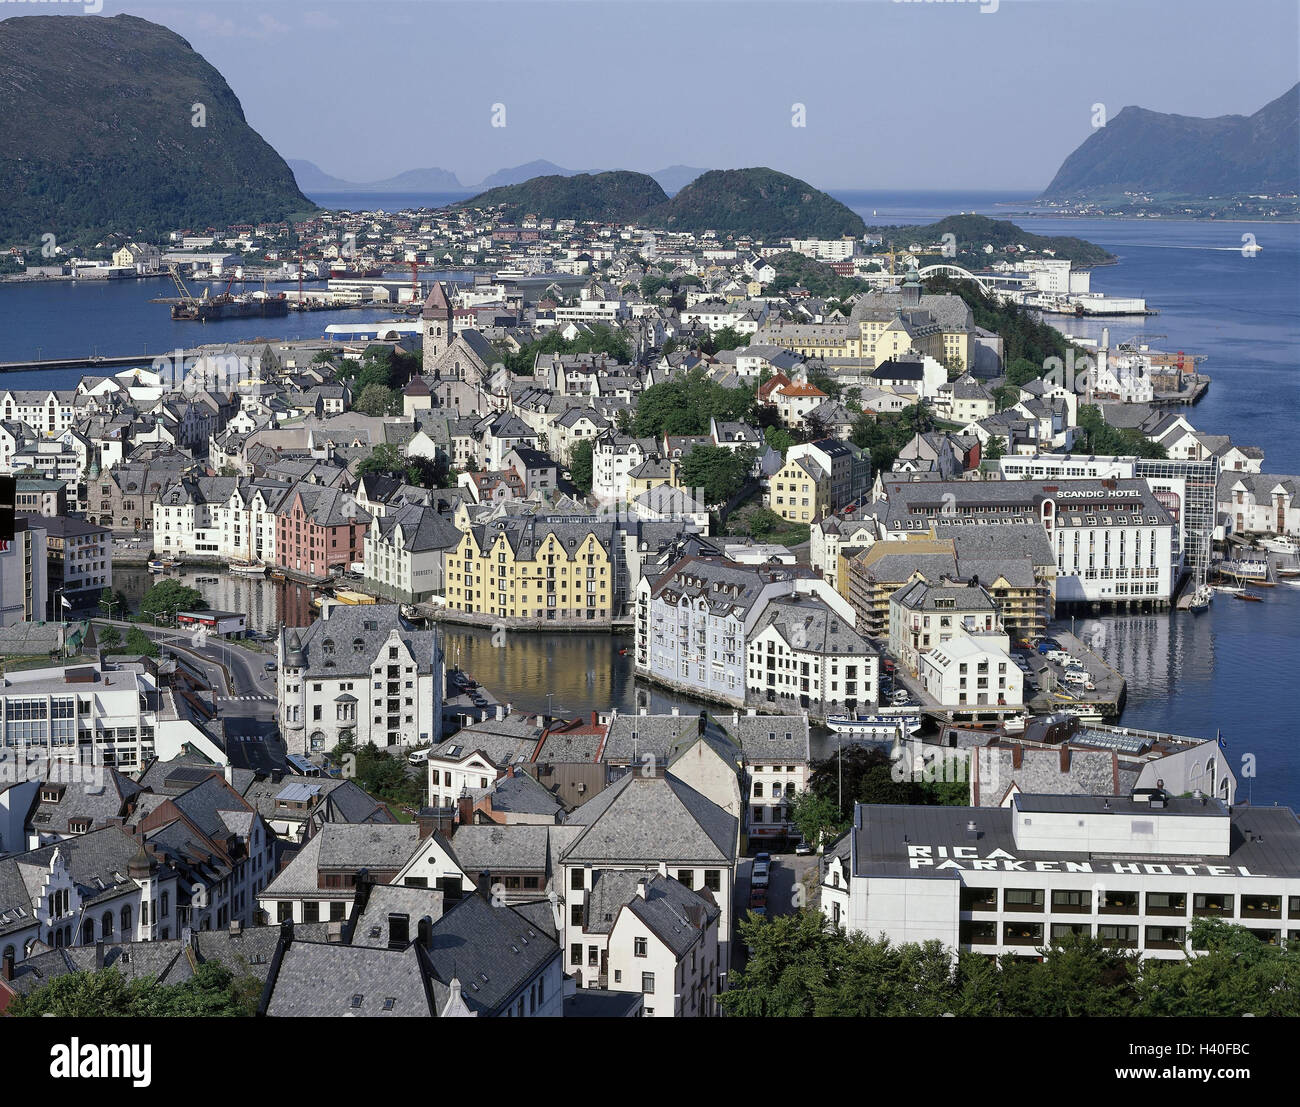 Norwegen, Ale sound, Stadtübersicht, Hafen, Skandinavien, mehr Og Romsdal, Hafen, Angeln Zentrum, Häuser, Wohnhäuser, Übersicht Stockfoto